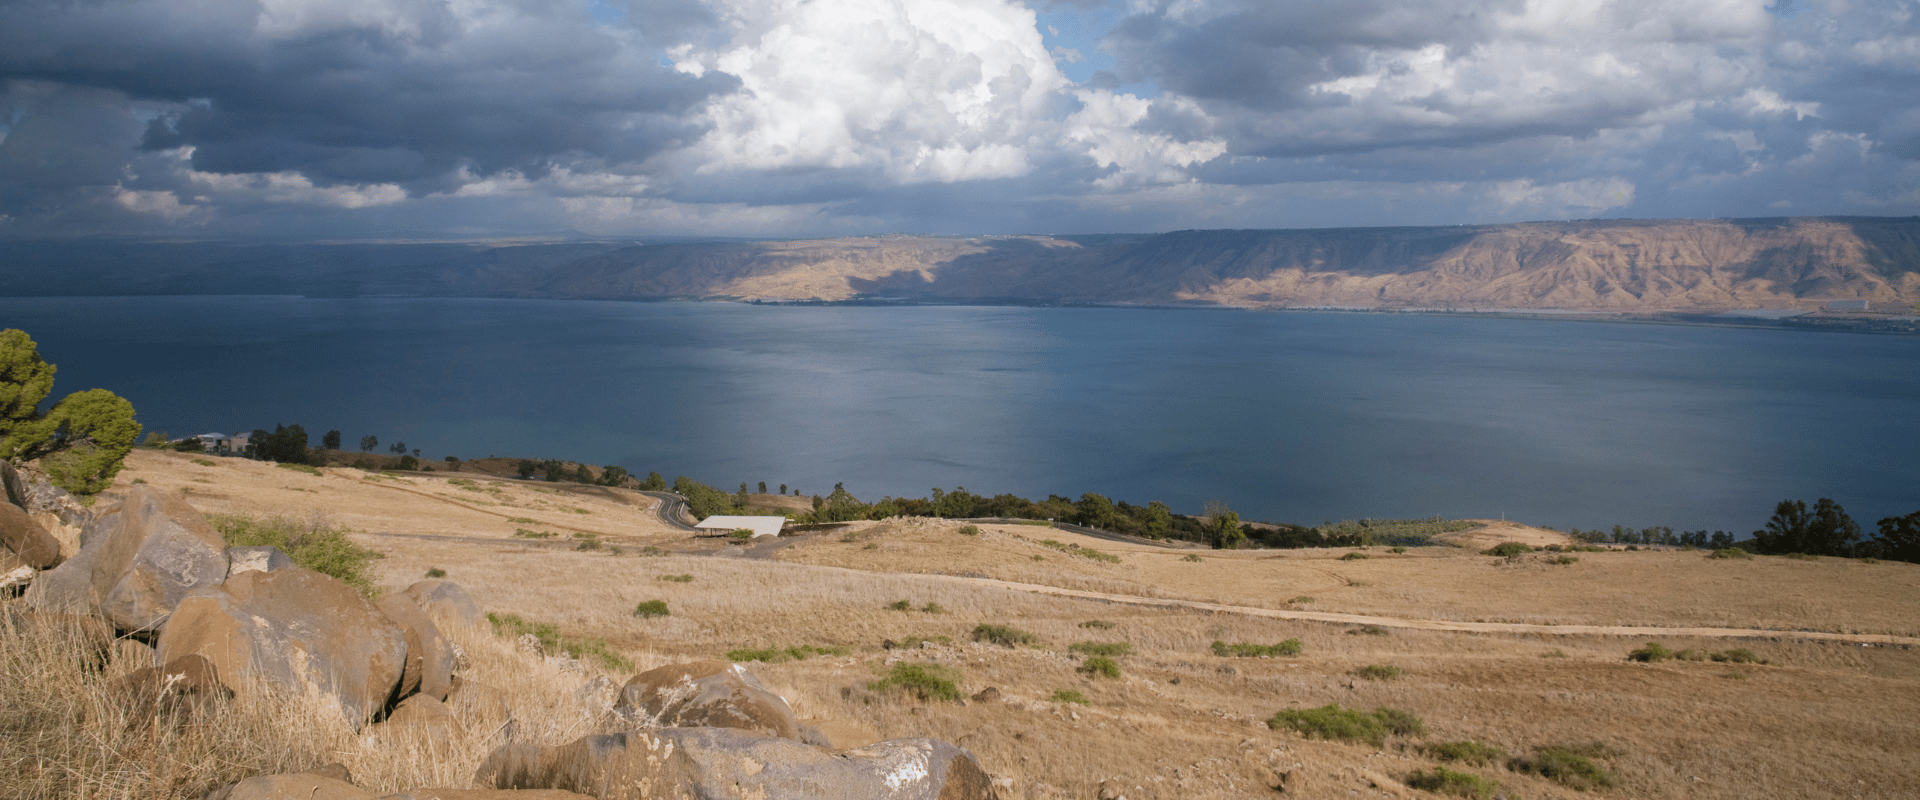 Sea of Galilee - Israel